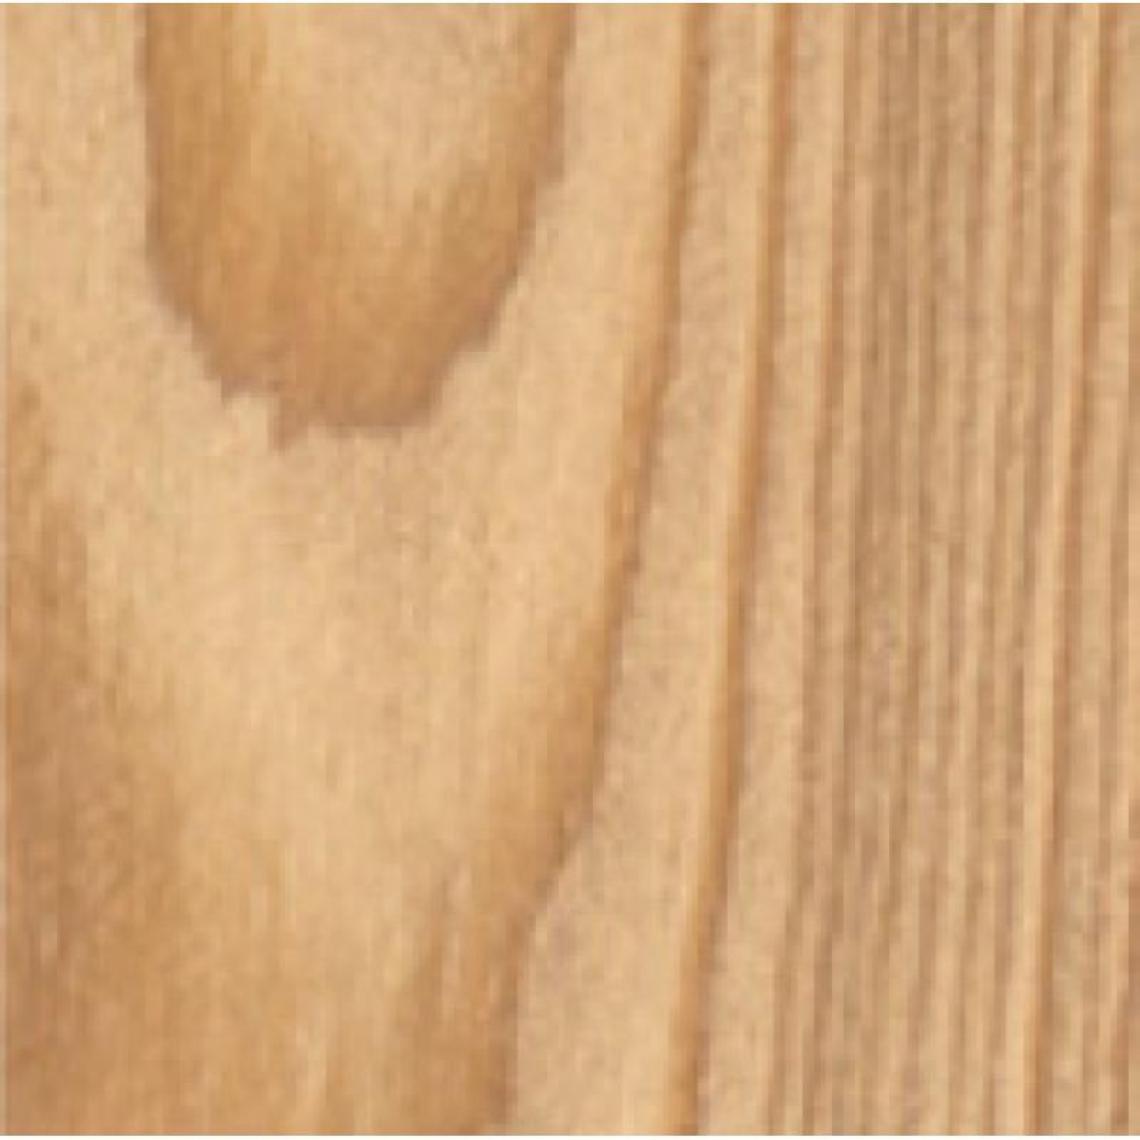 Blanchon - Lasures Aqua Polyuréthane Tech-Wood teinte brun acajou bidon de 5 - Produit de finition pour bois